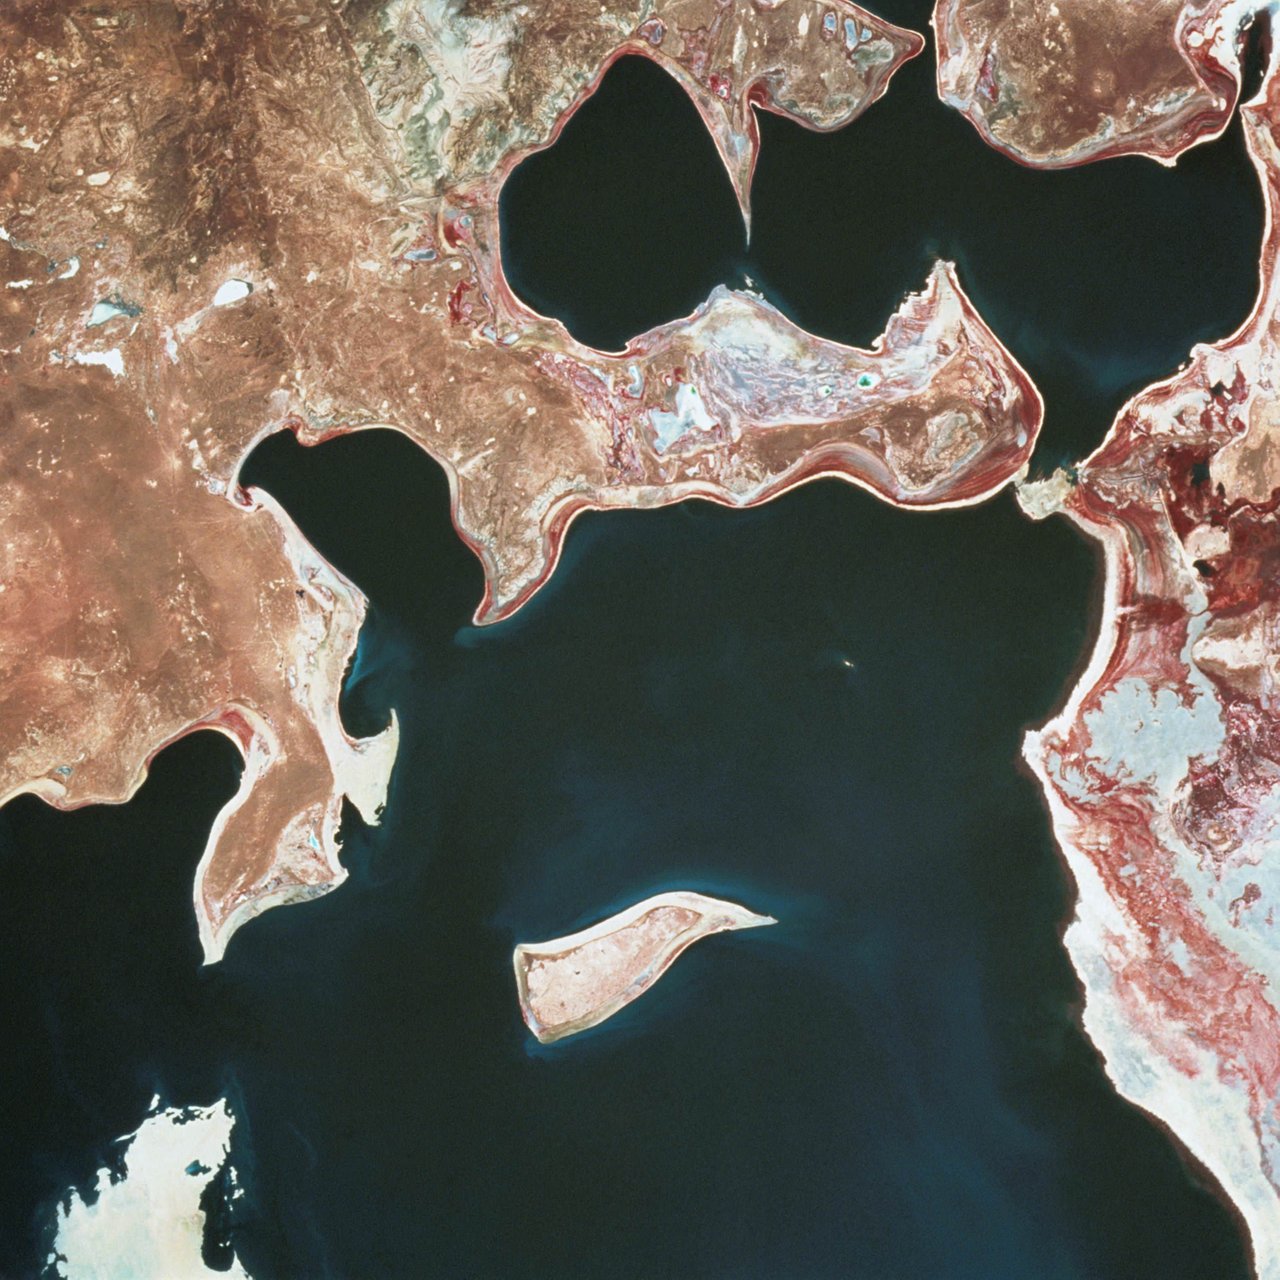 аральское море сегодня фото со спутника